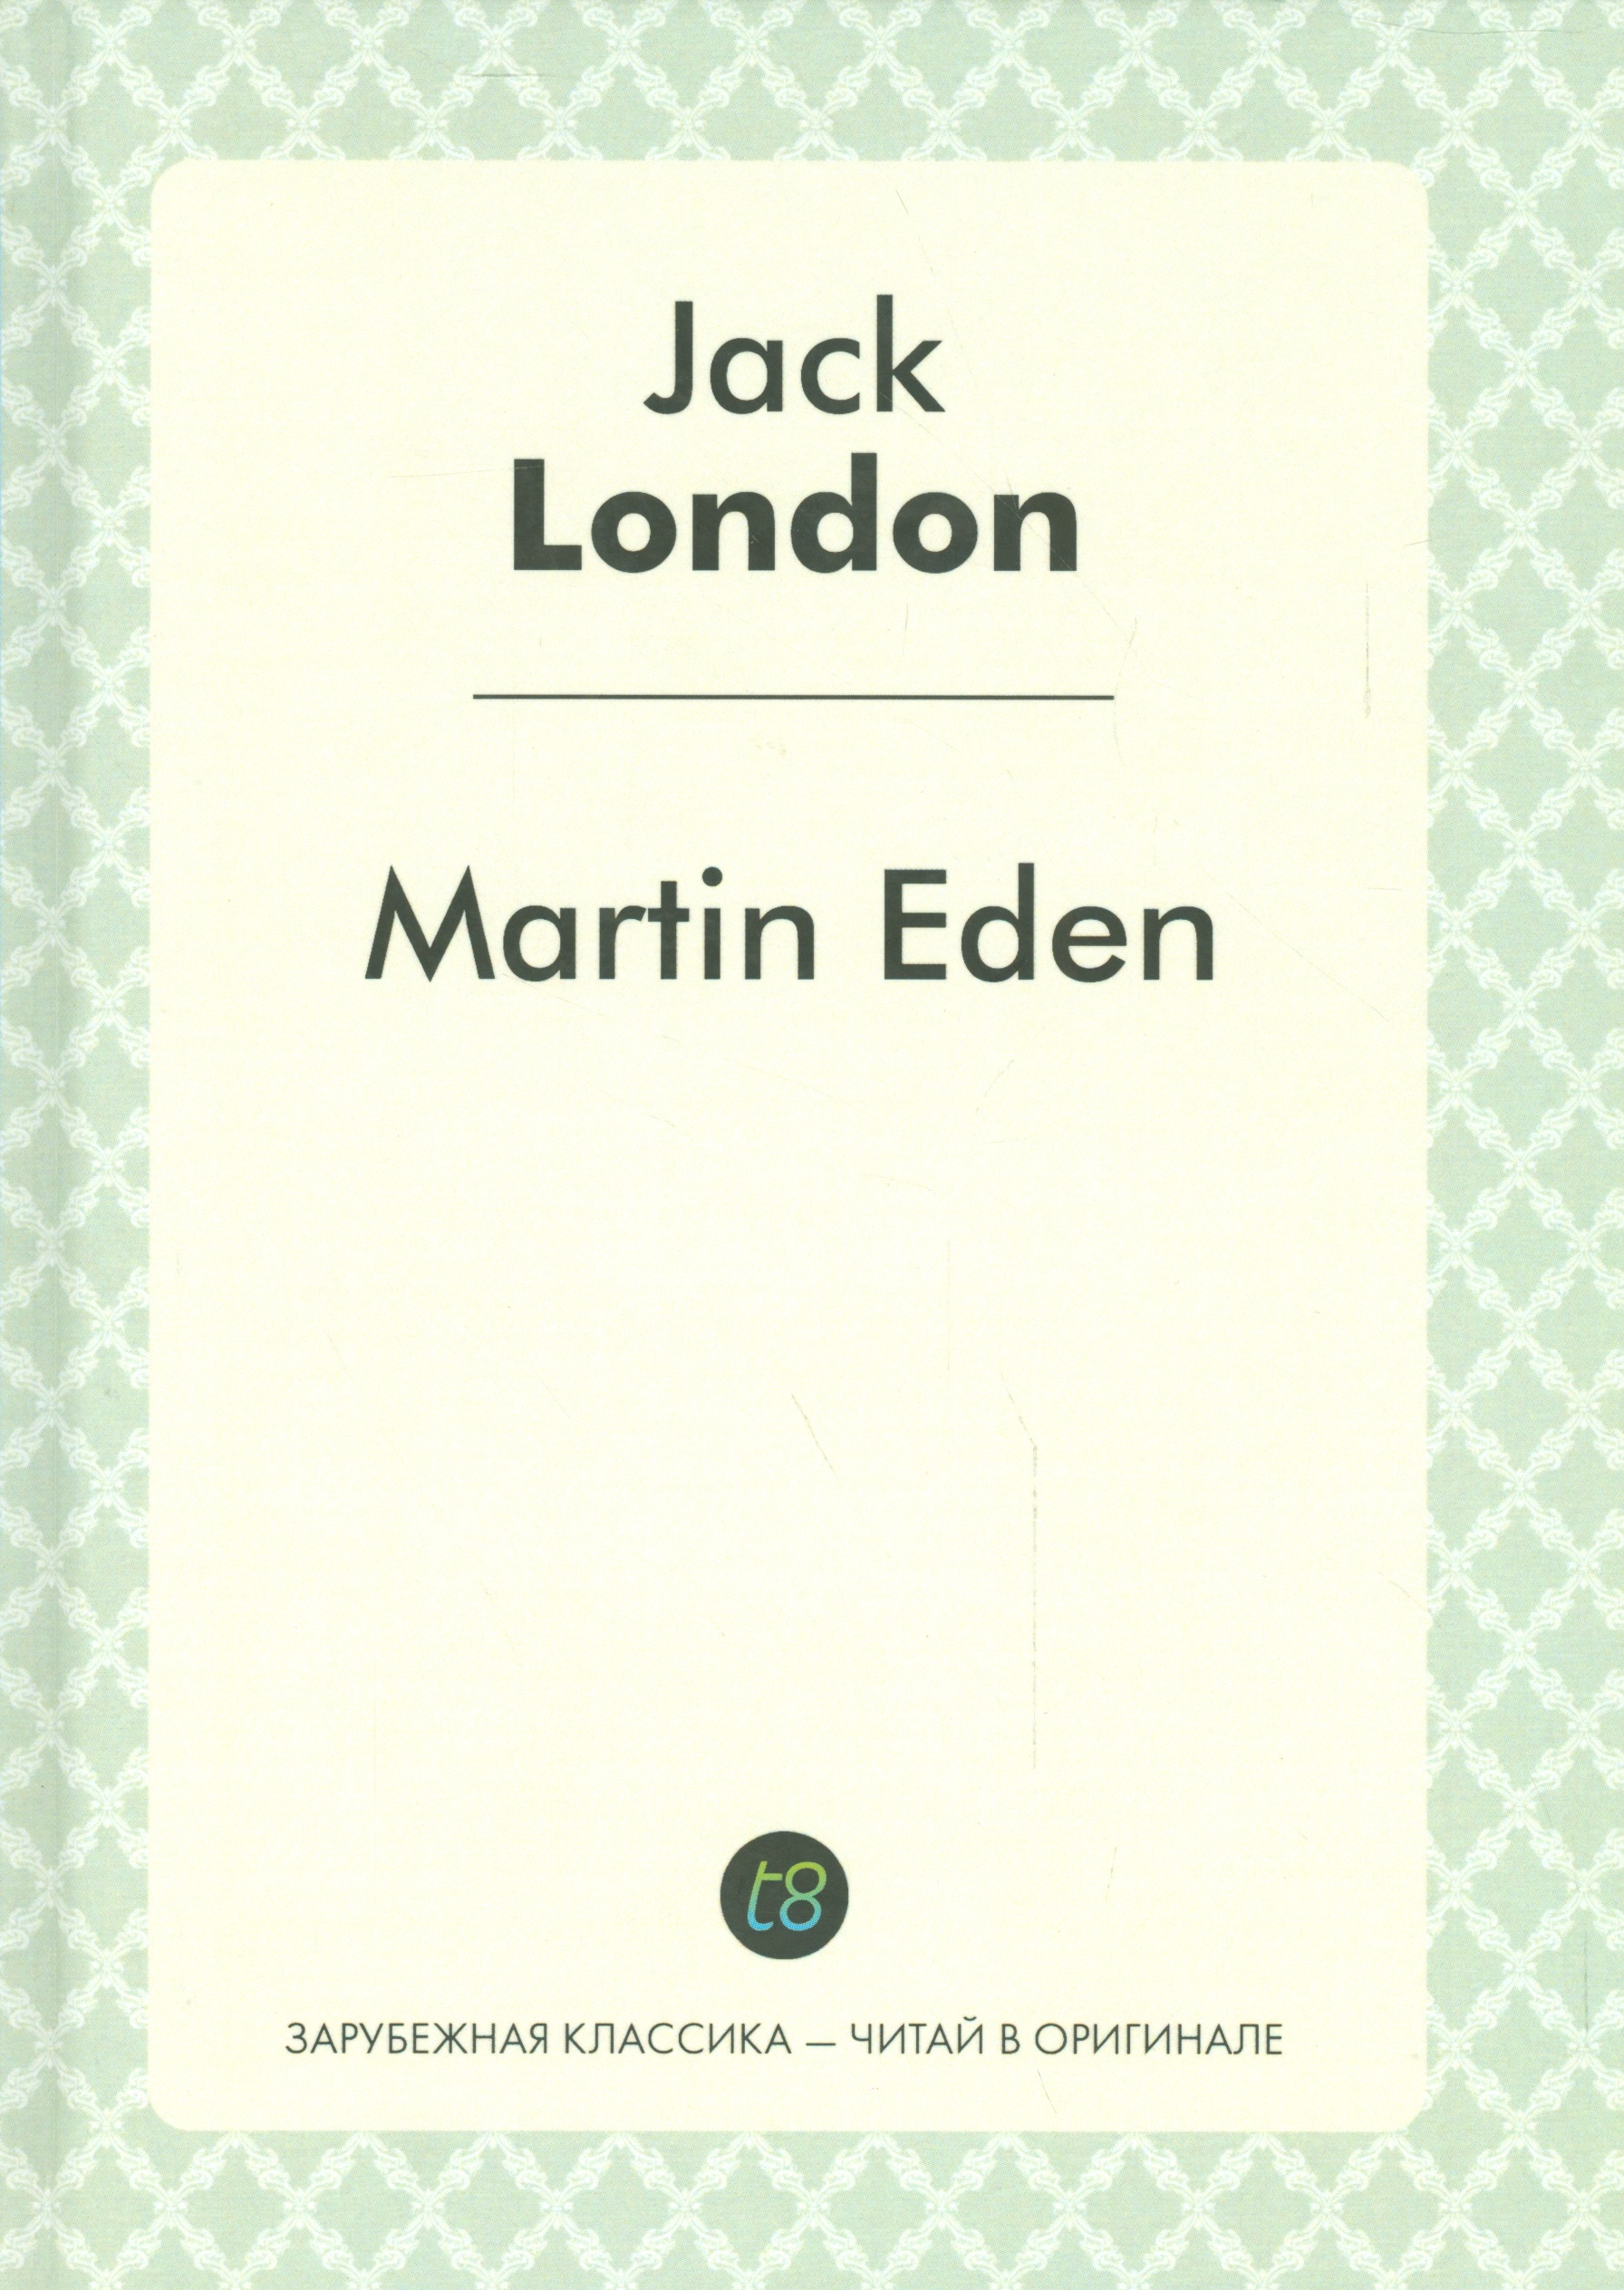 Martin Eden = Мартин Иден: роман на англ.яз. лондон джек adventure приключение роман на англ языке зарубежная классика читай в оргинале